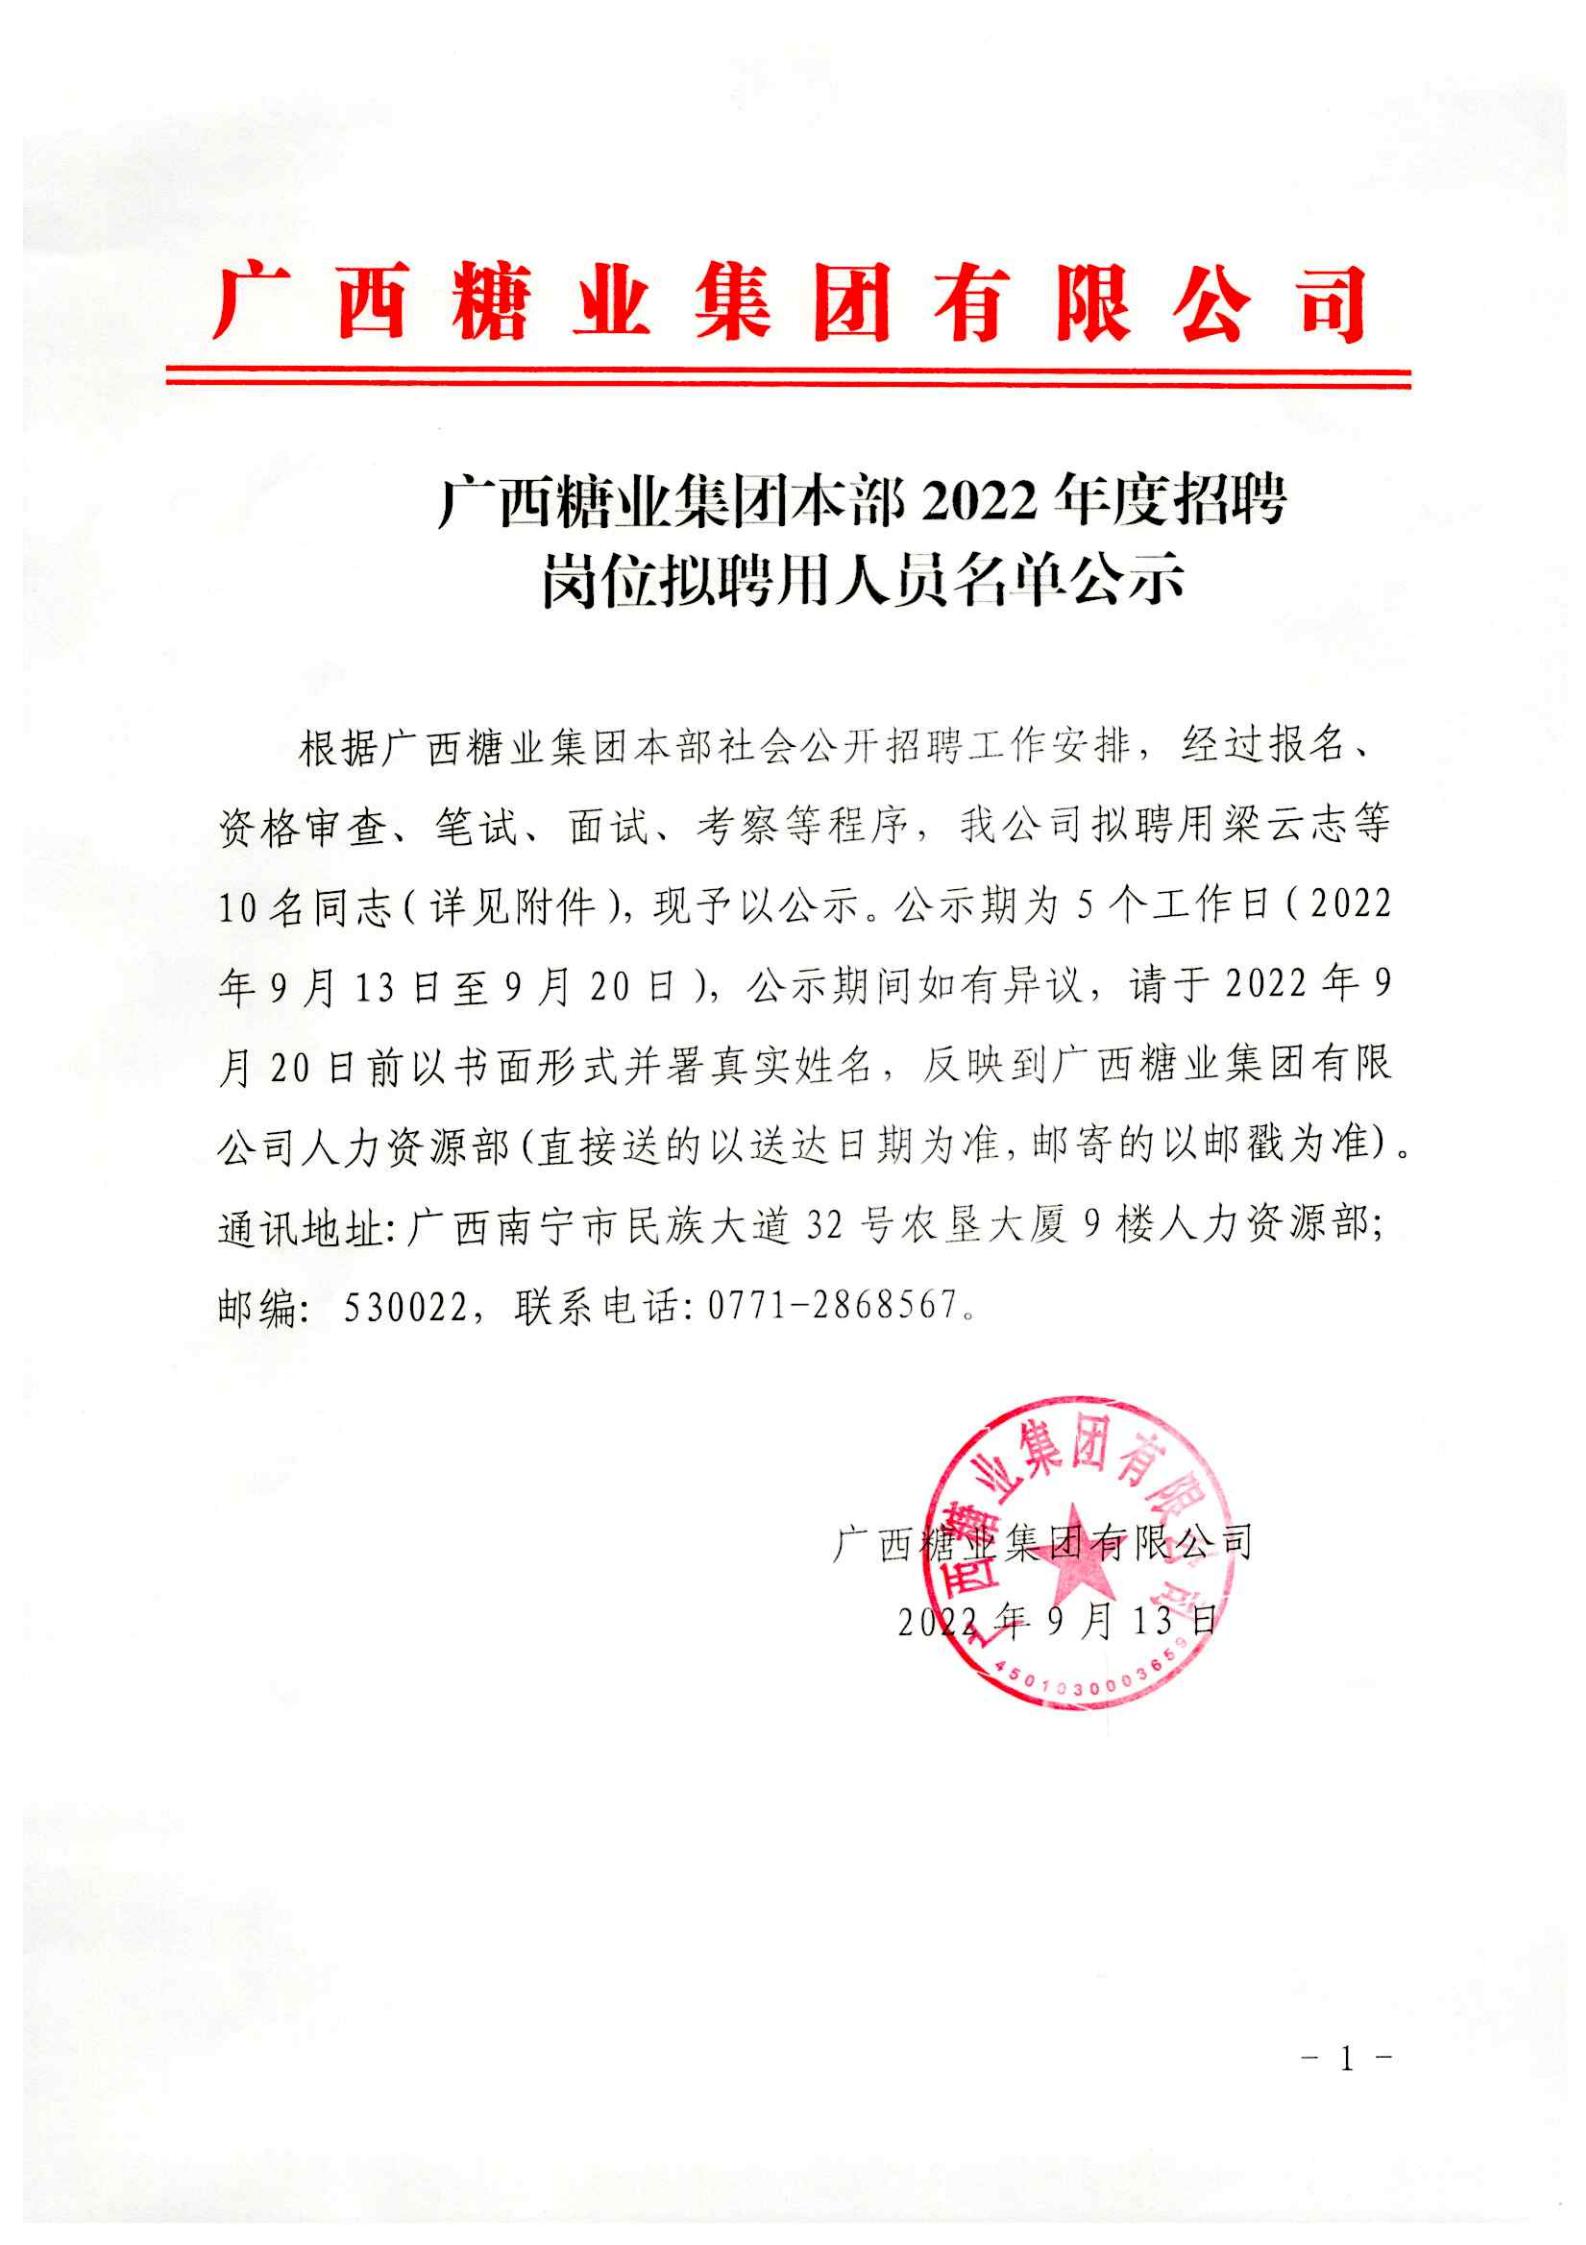 完美体育app(中国)股份有限公司官网本部2022年度招聘岗位拟聘用人员名单公示 (2)_00.jpg